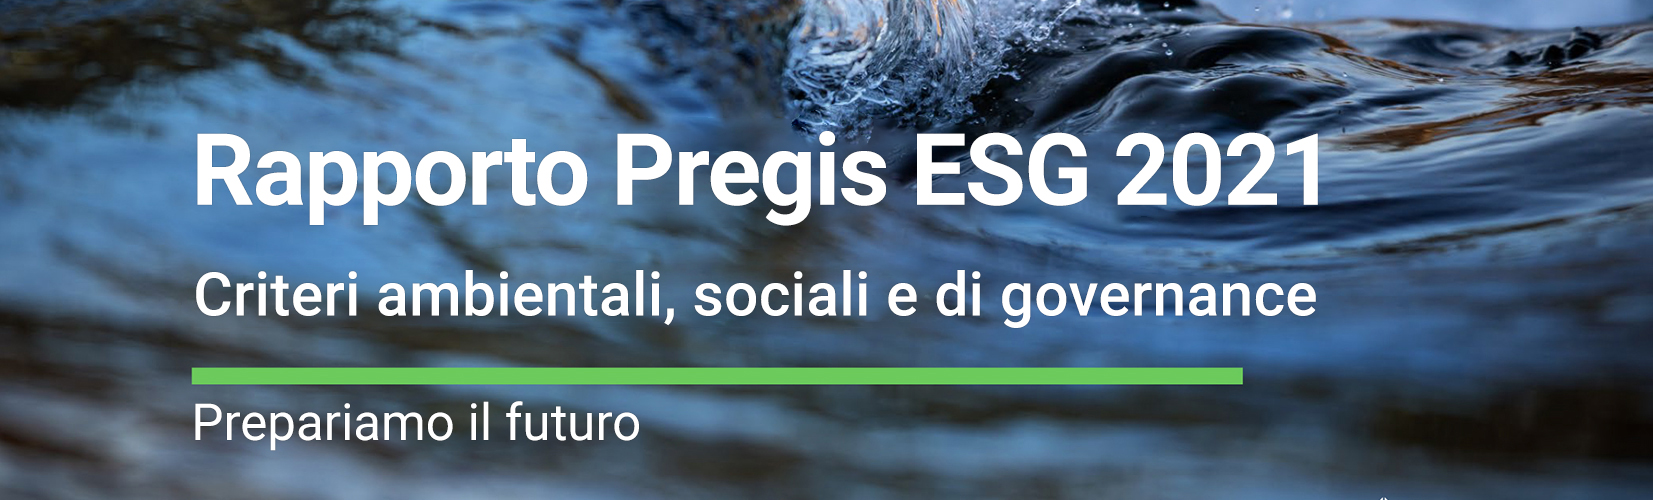 Rapporto Pregis ESG 2021